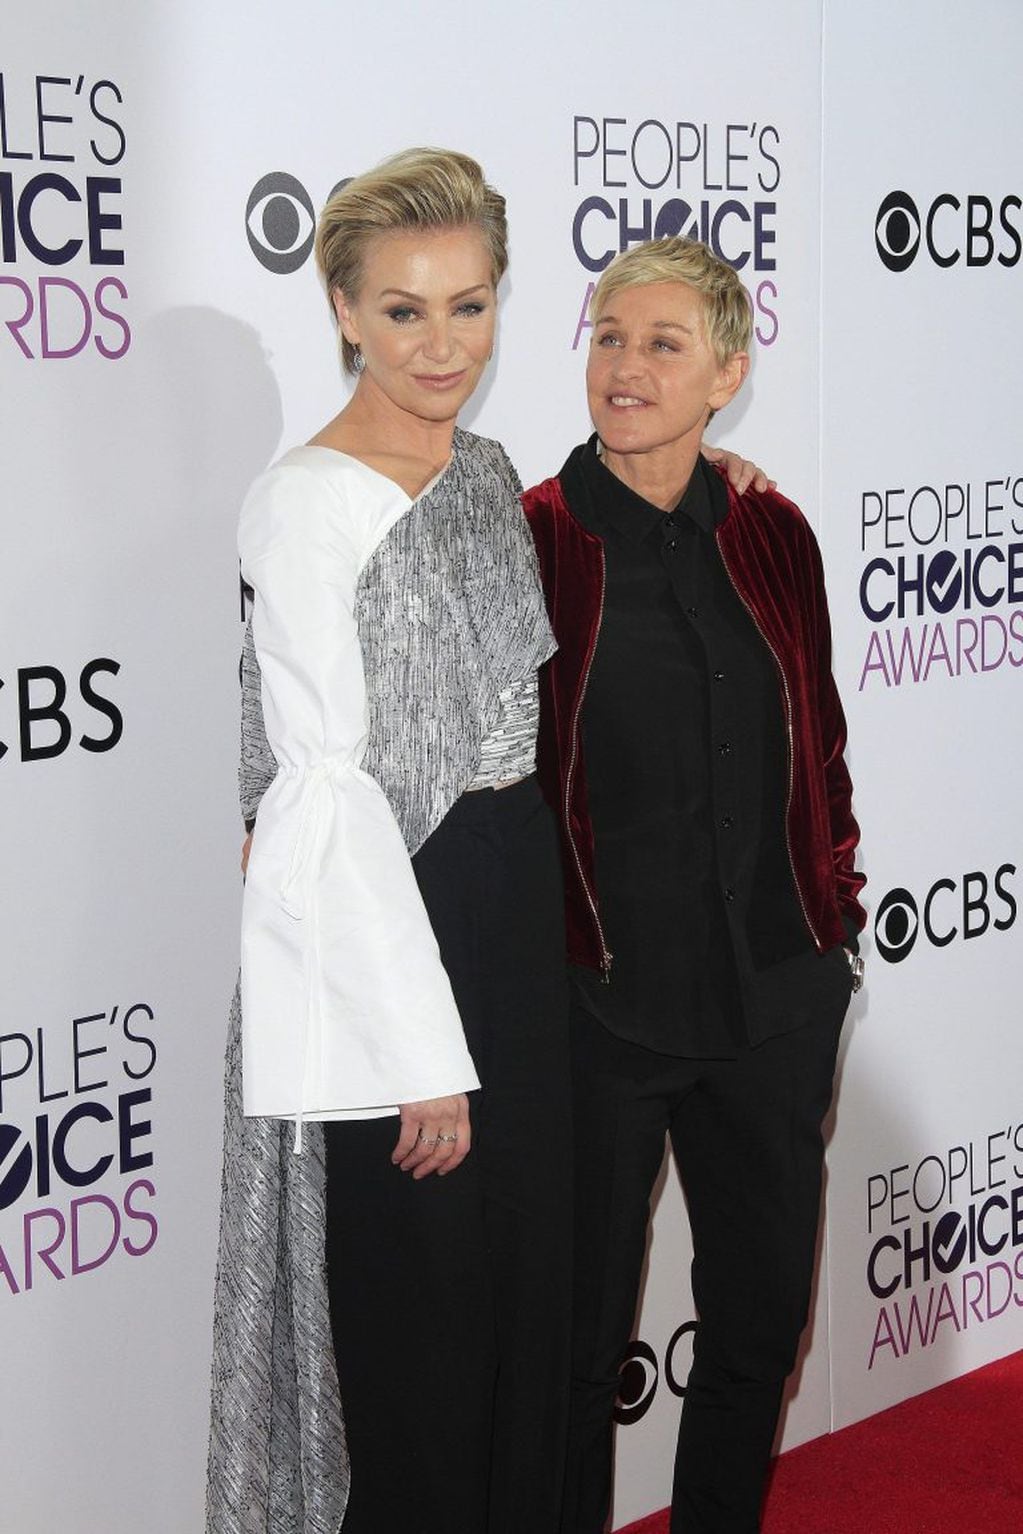 La presentadora de televisión Ellen DeGeneres (dcha) y su esposa, la actriz Portia de Rossi, posan para los fotógrafos durante la ceremonia de entrega de los premios People's Choice Awards 2017 en Los Ángeles, California (Foto: EFE)